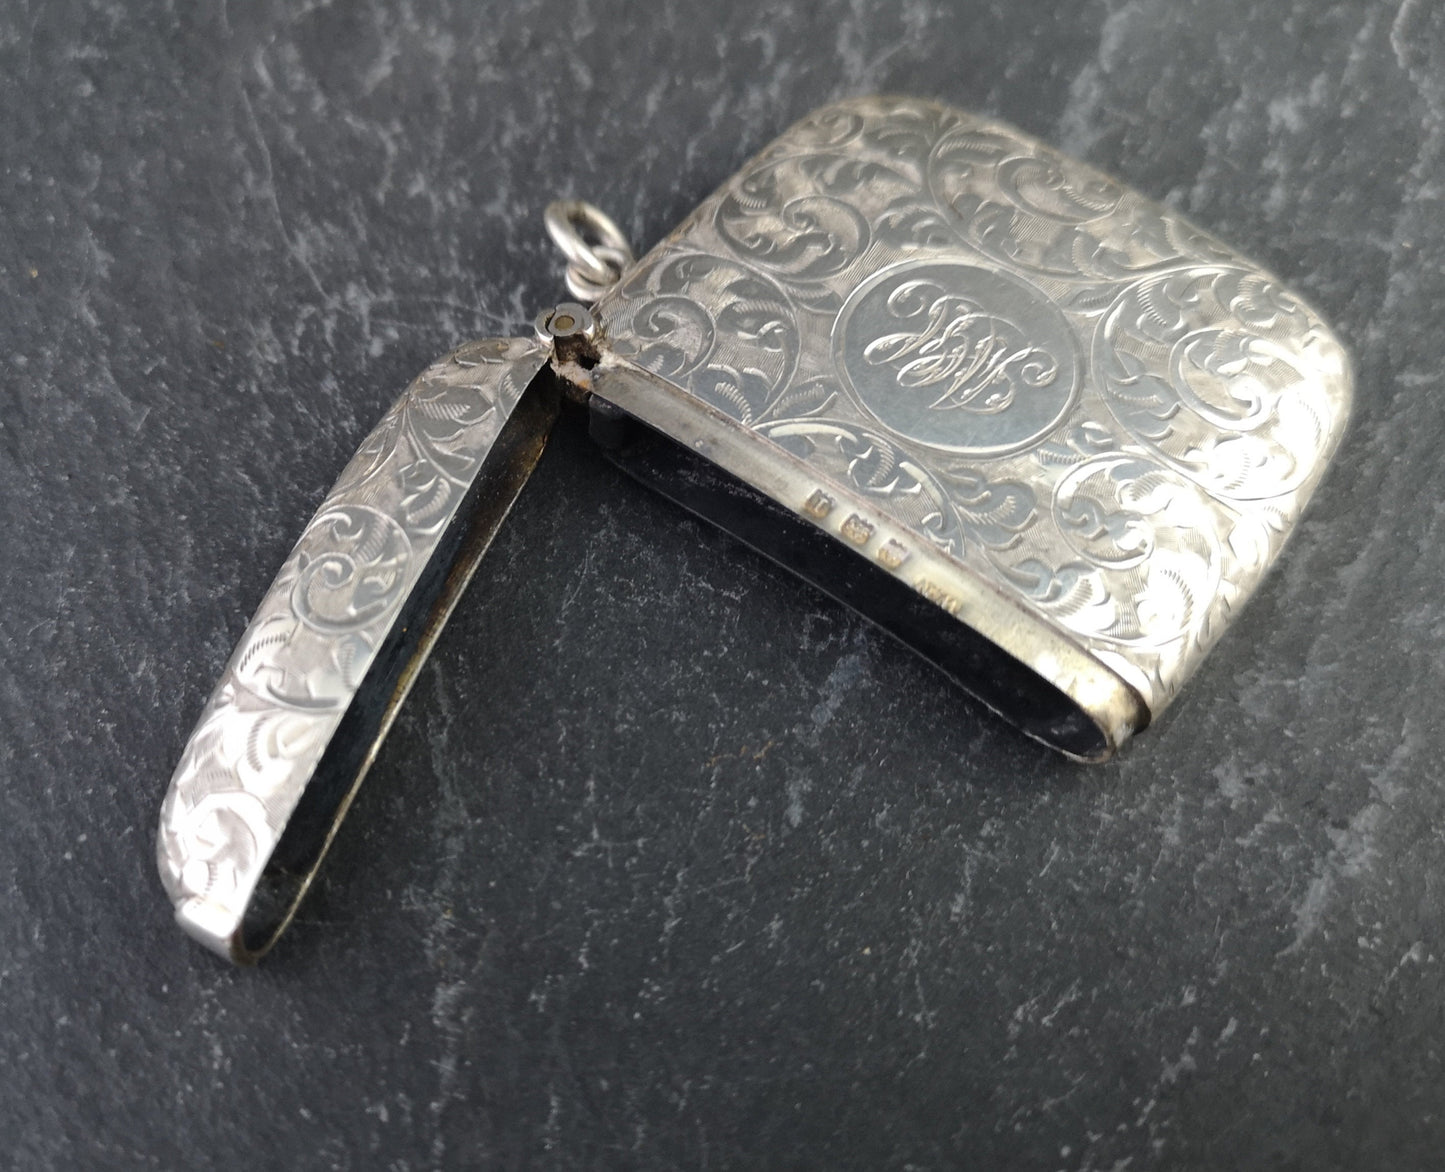 Antique sterling silver vesta case, engraved